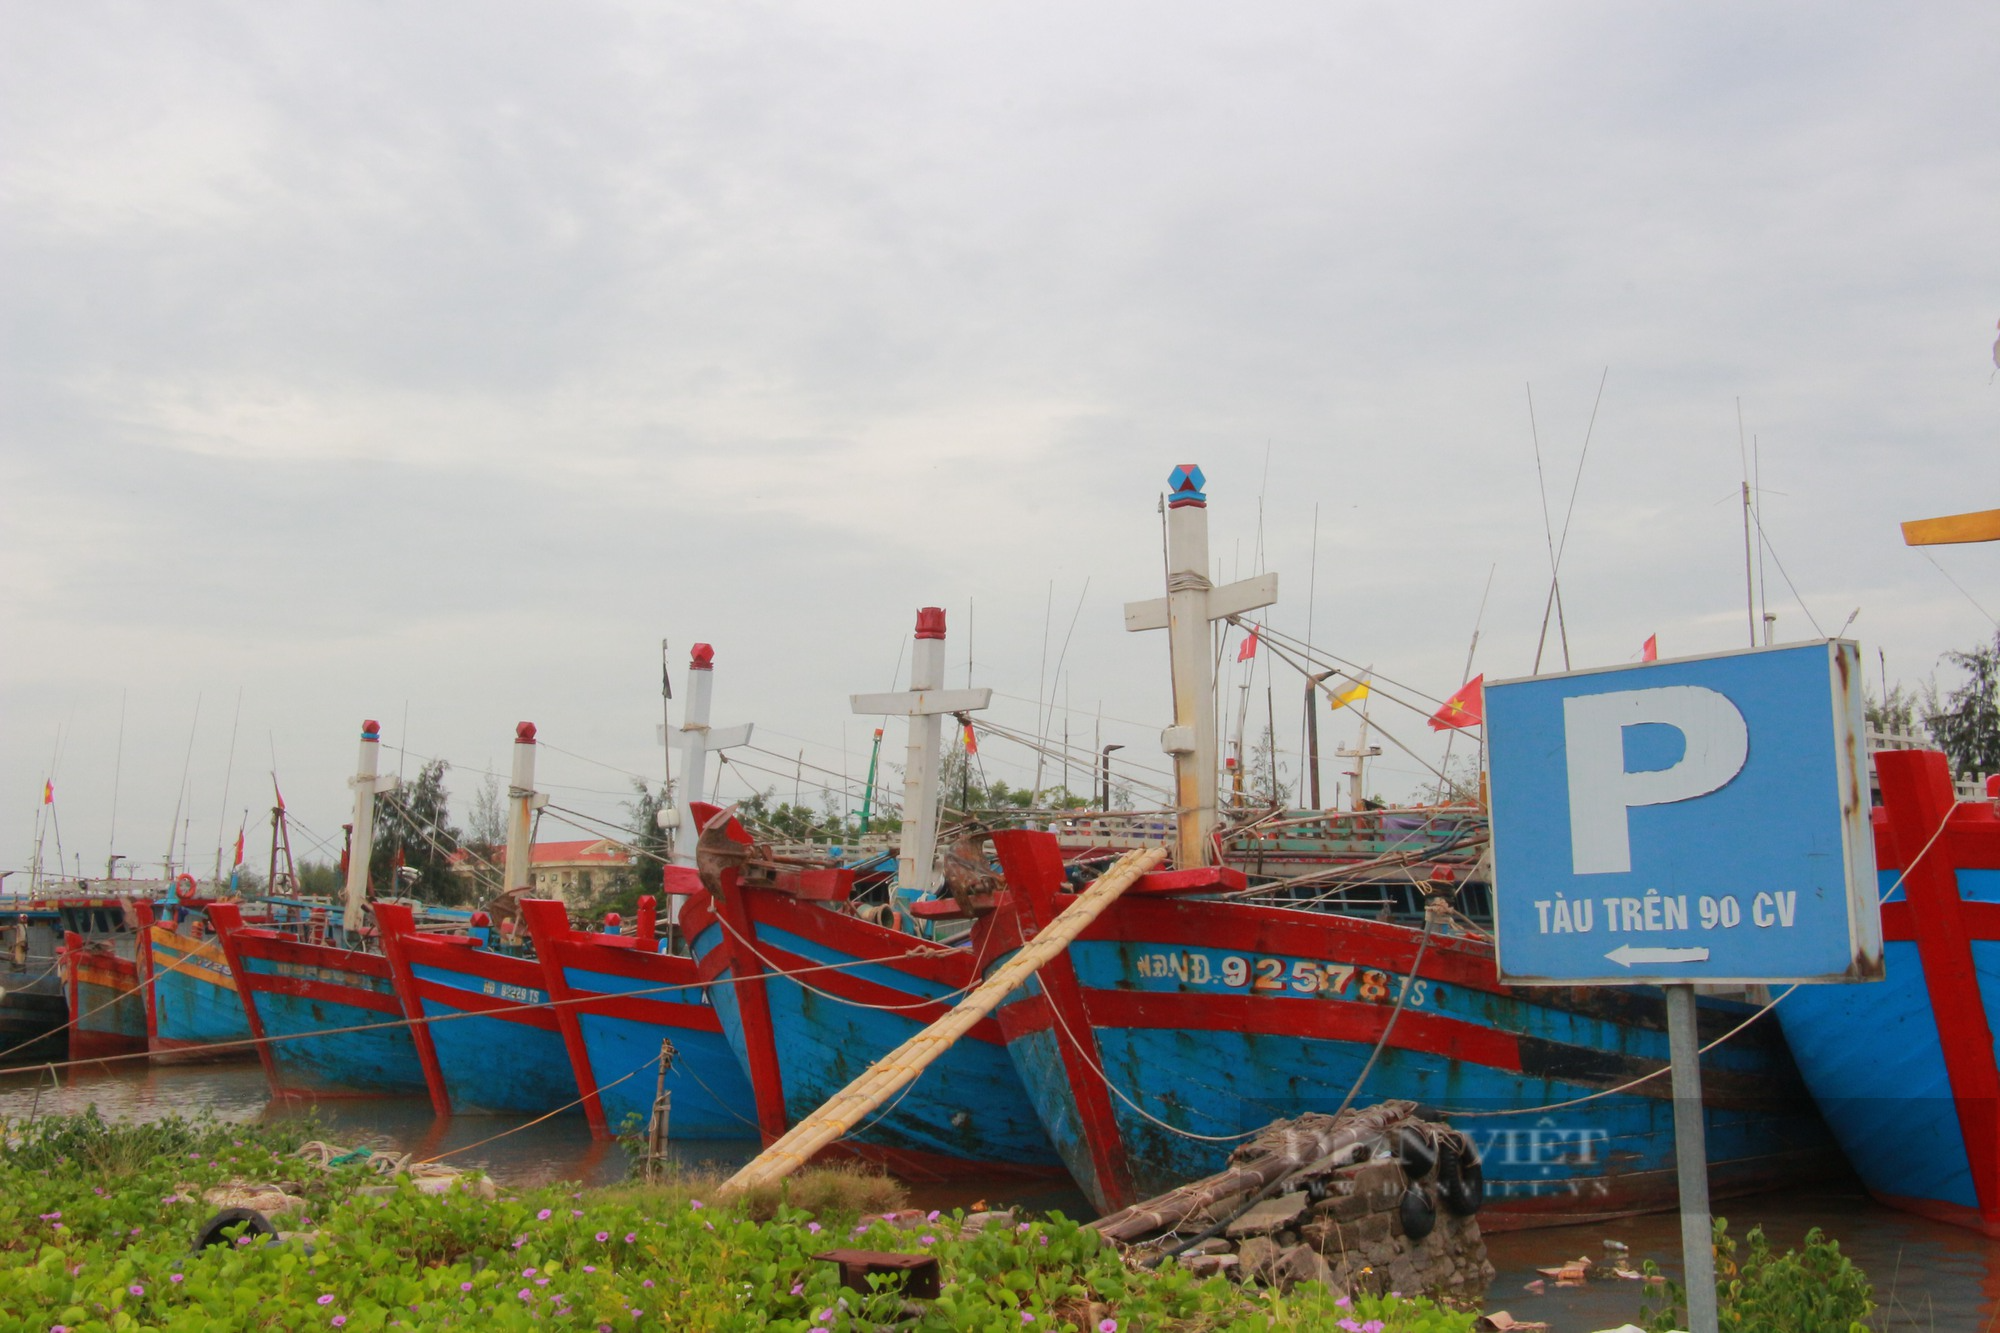 Chống khai thác IUU, tỉnh Nam Định xử phạt nhiều tàu cá vi phạm pháp luật - Ảnh 1.